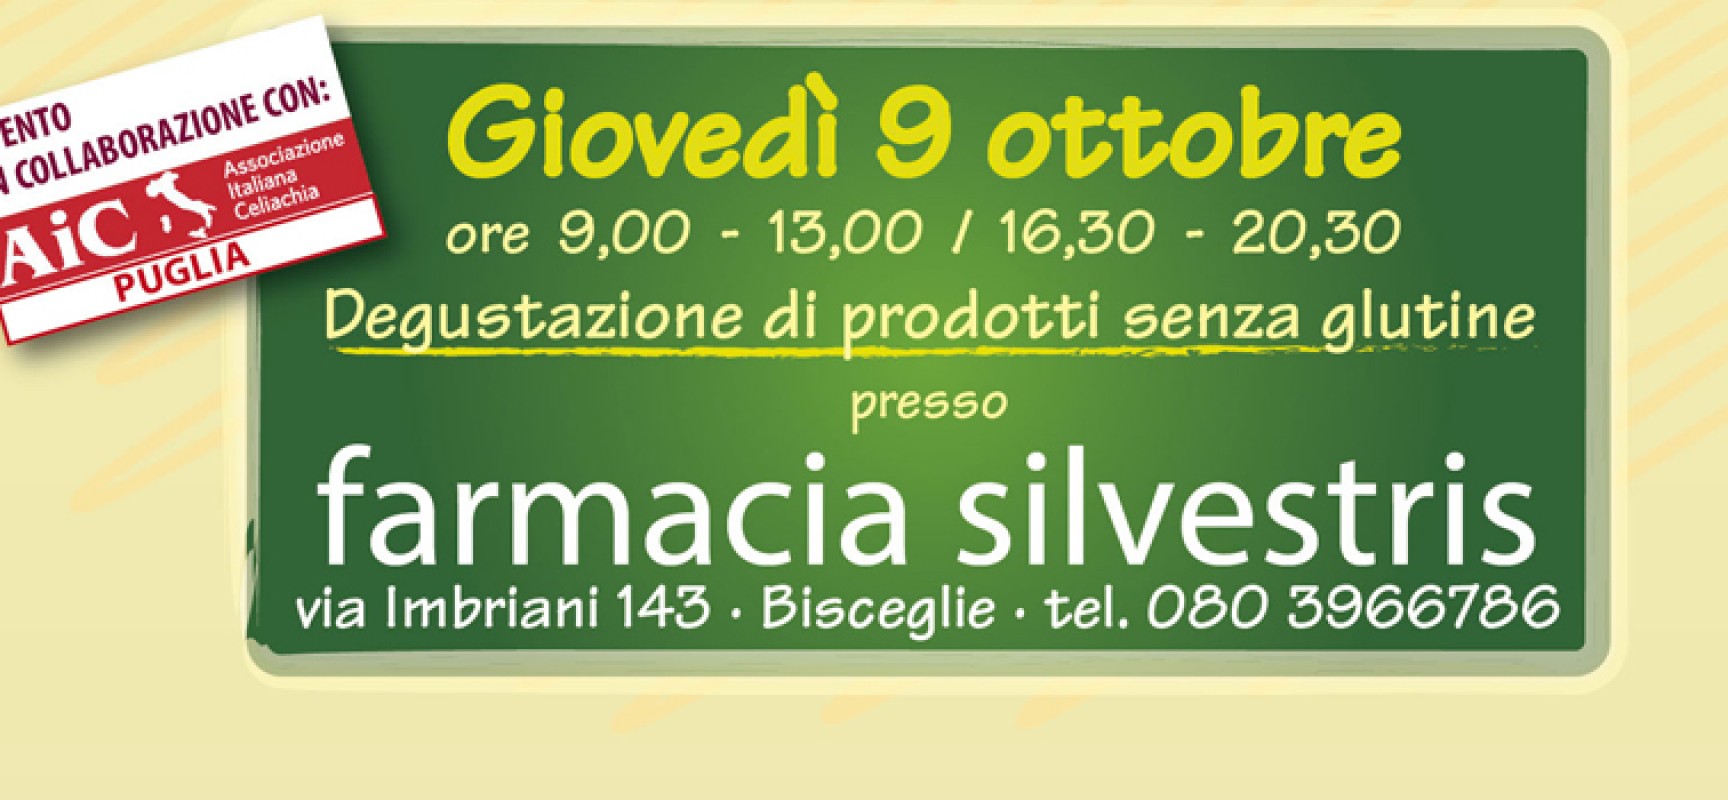 Il 9 ottobre Farmacia Silvestris propone la prima giornata dedicata ai prodotti senza glutine